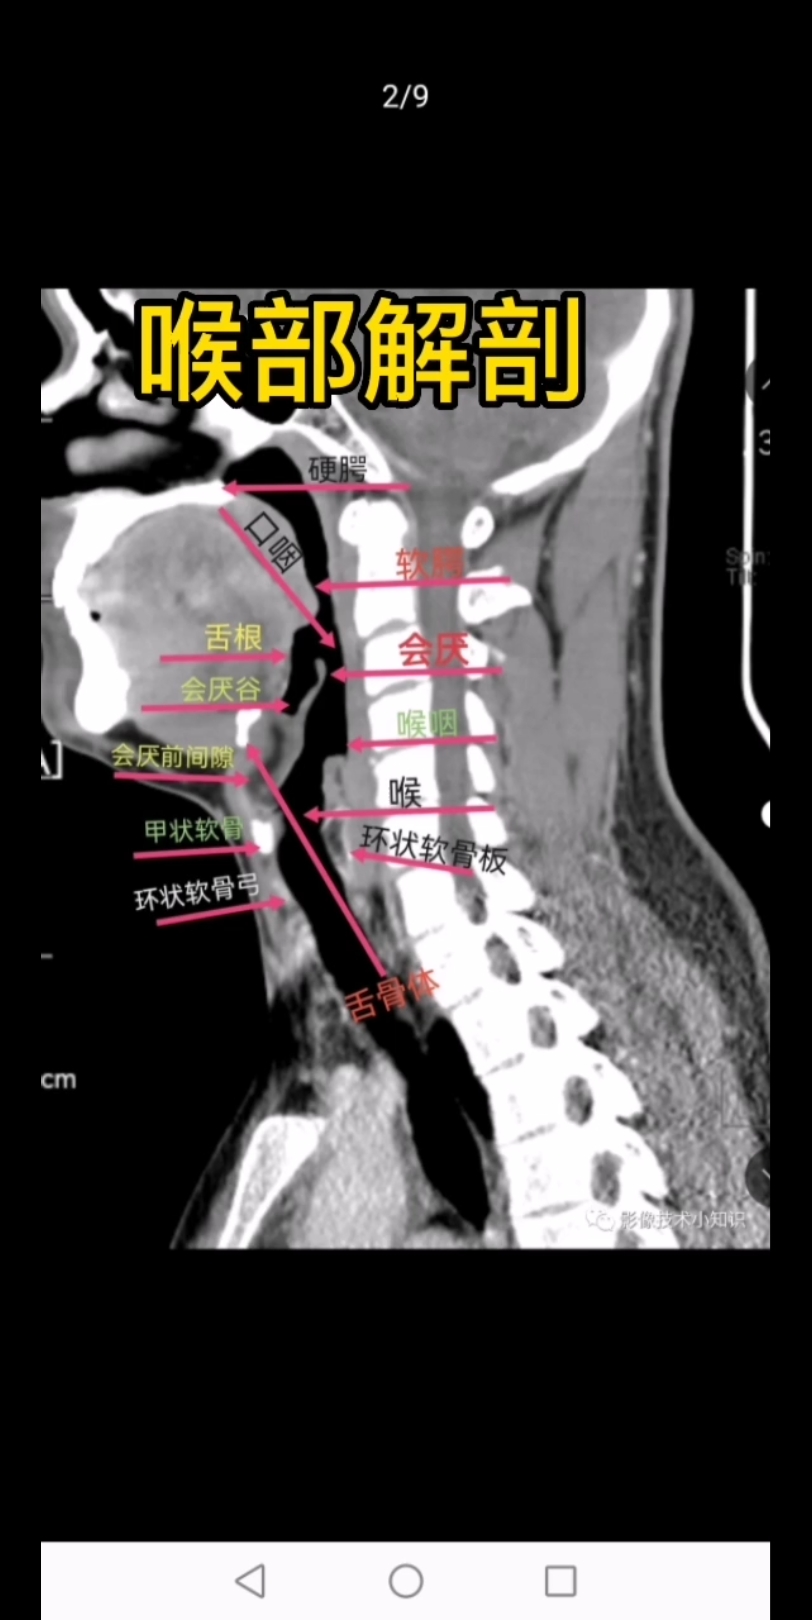 硬腭CT断层图像图片